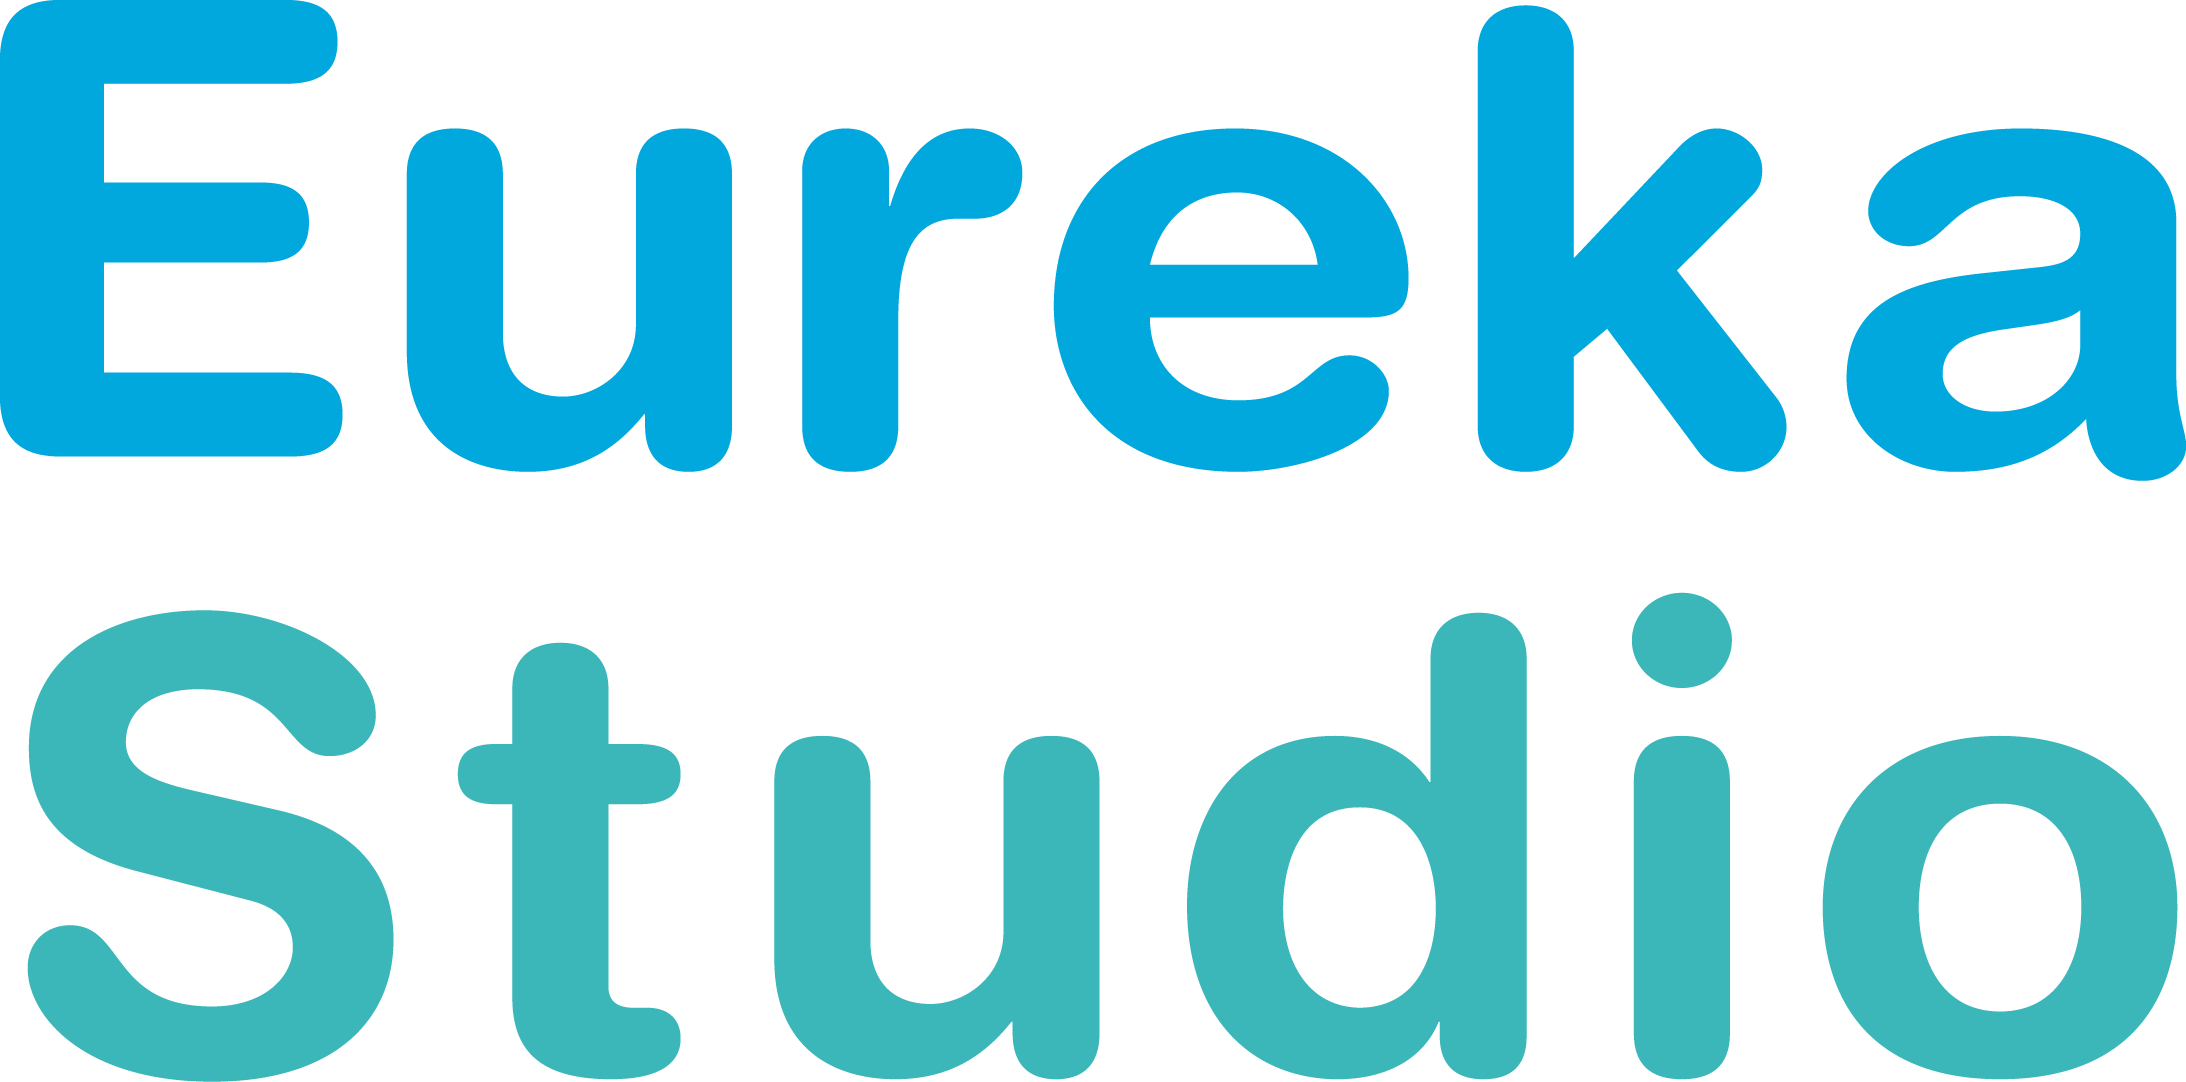 Eureka Studio